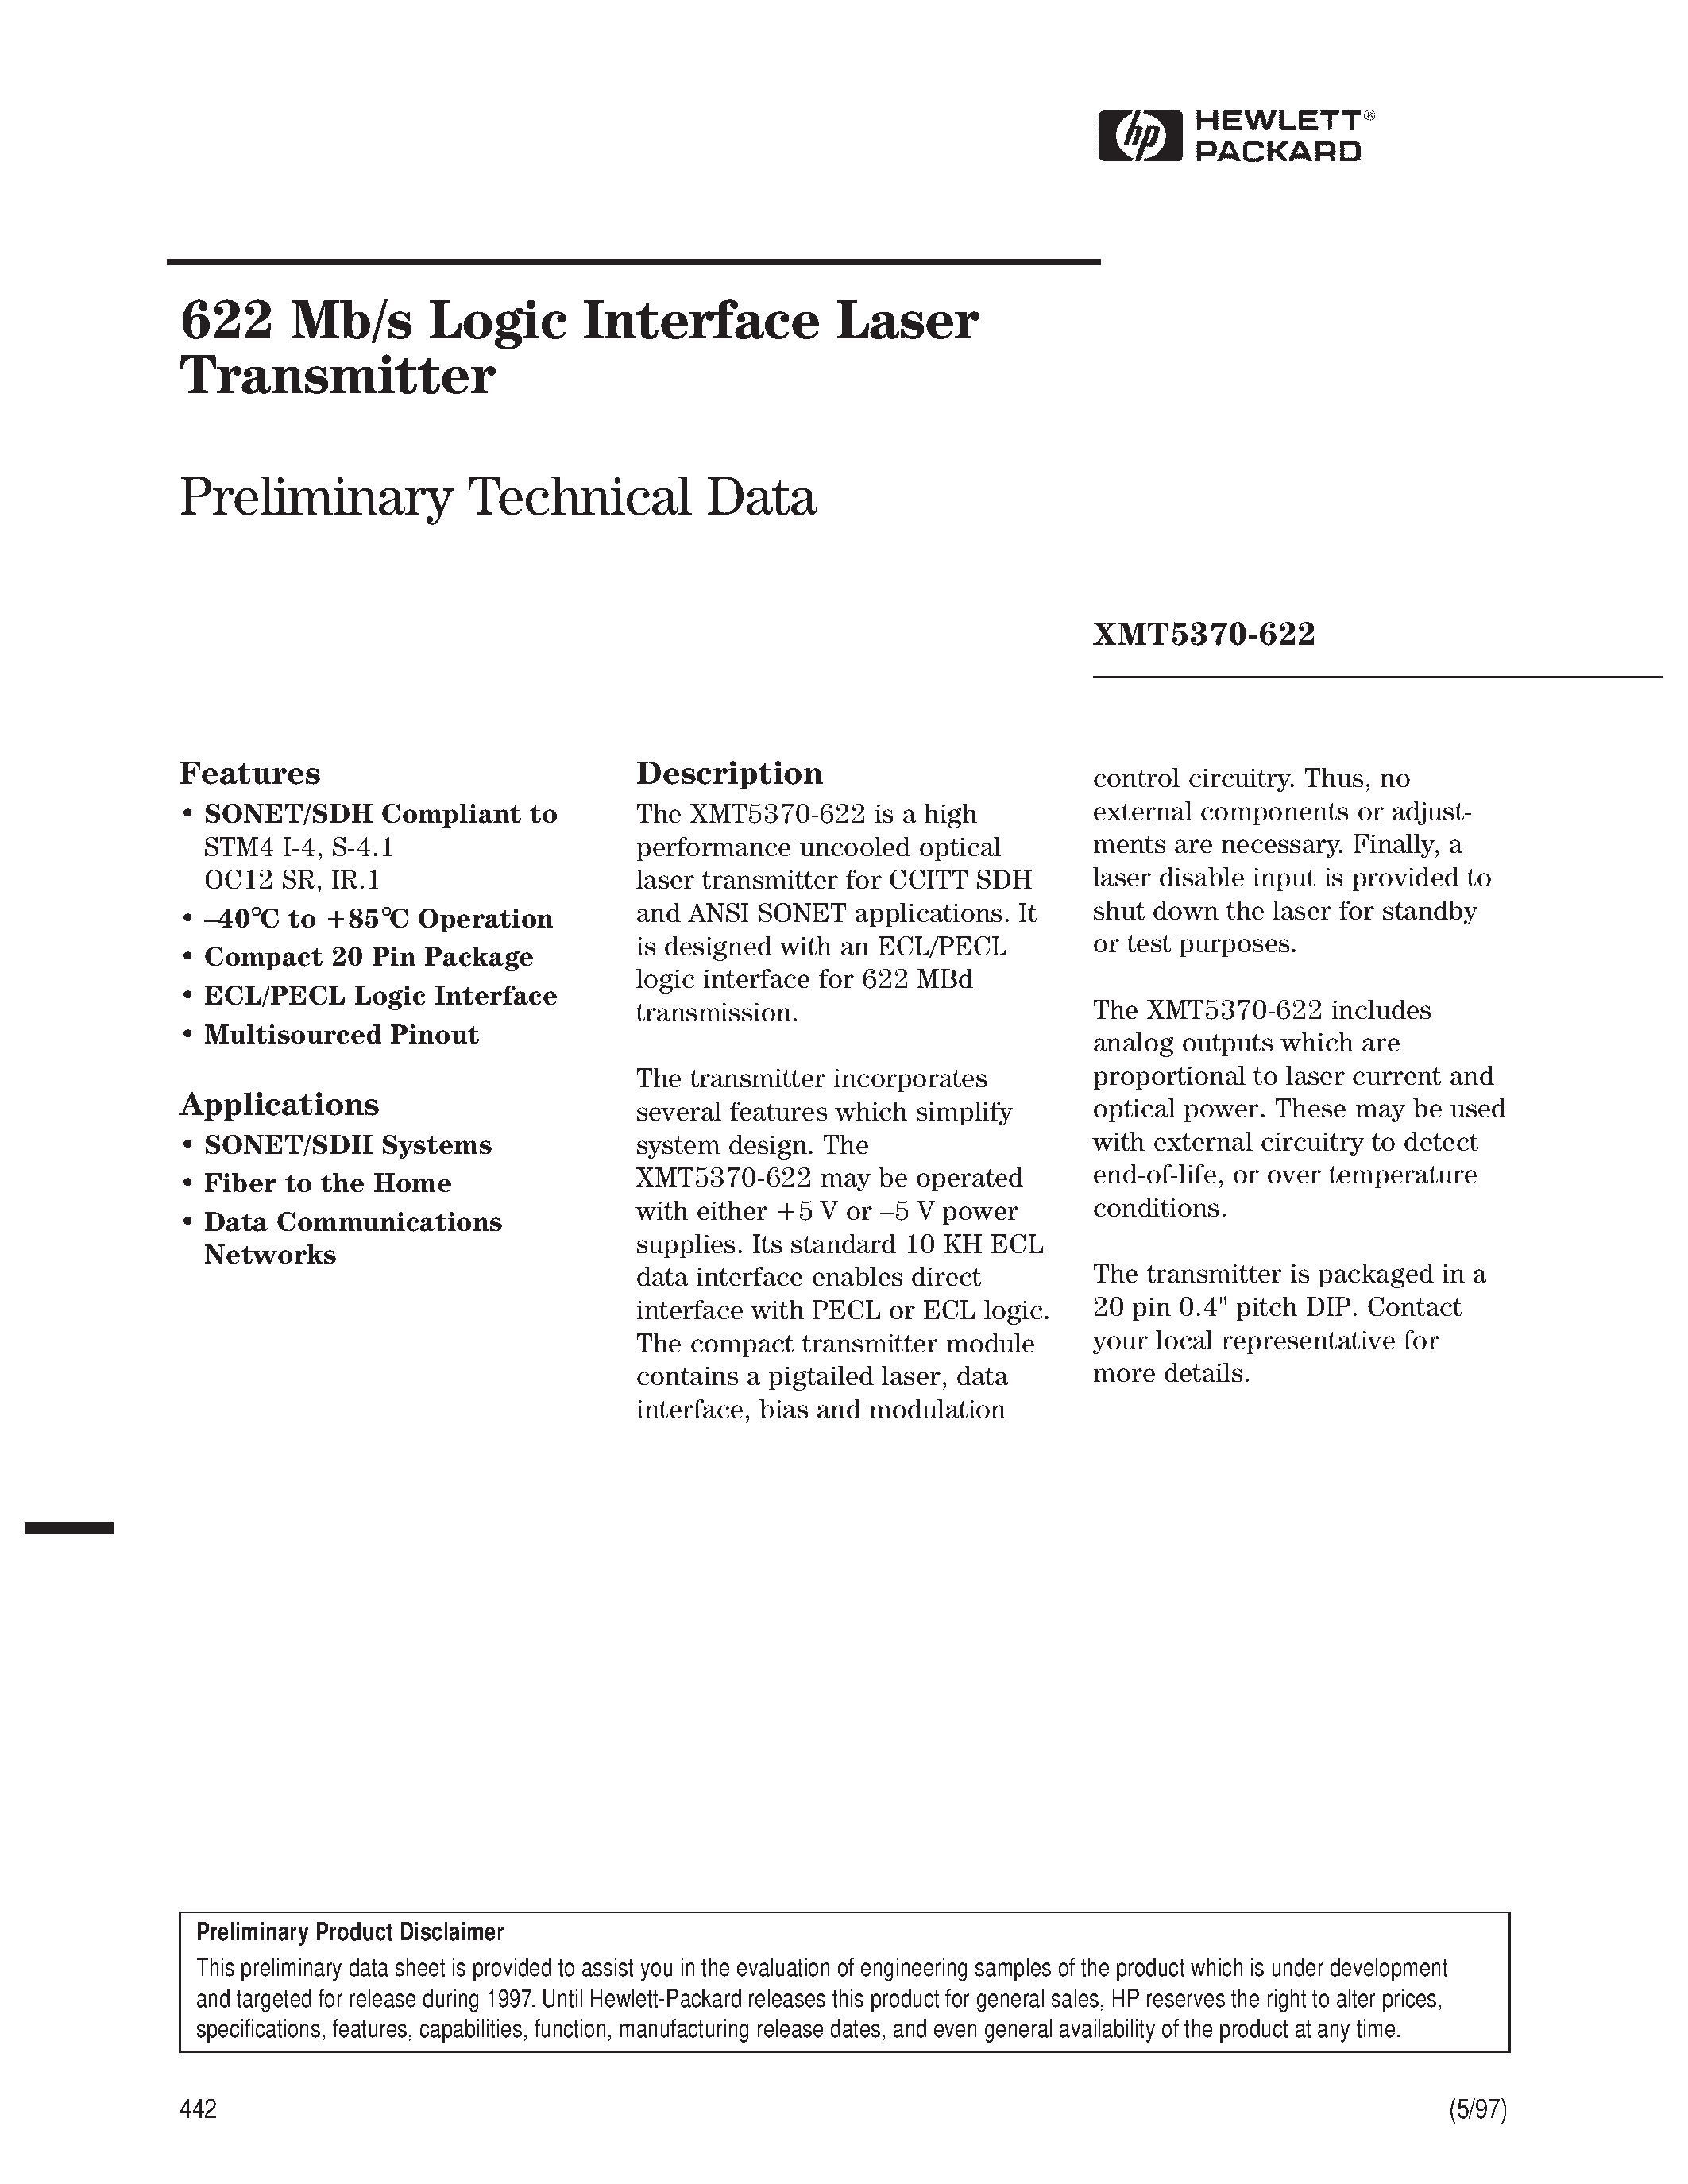 Datasheet XMT5370B-622-FP - 622 Mb/s Logic Interface Laser Transmitter page 1